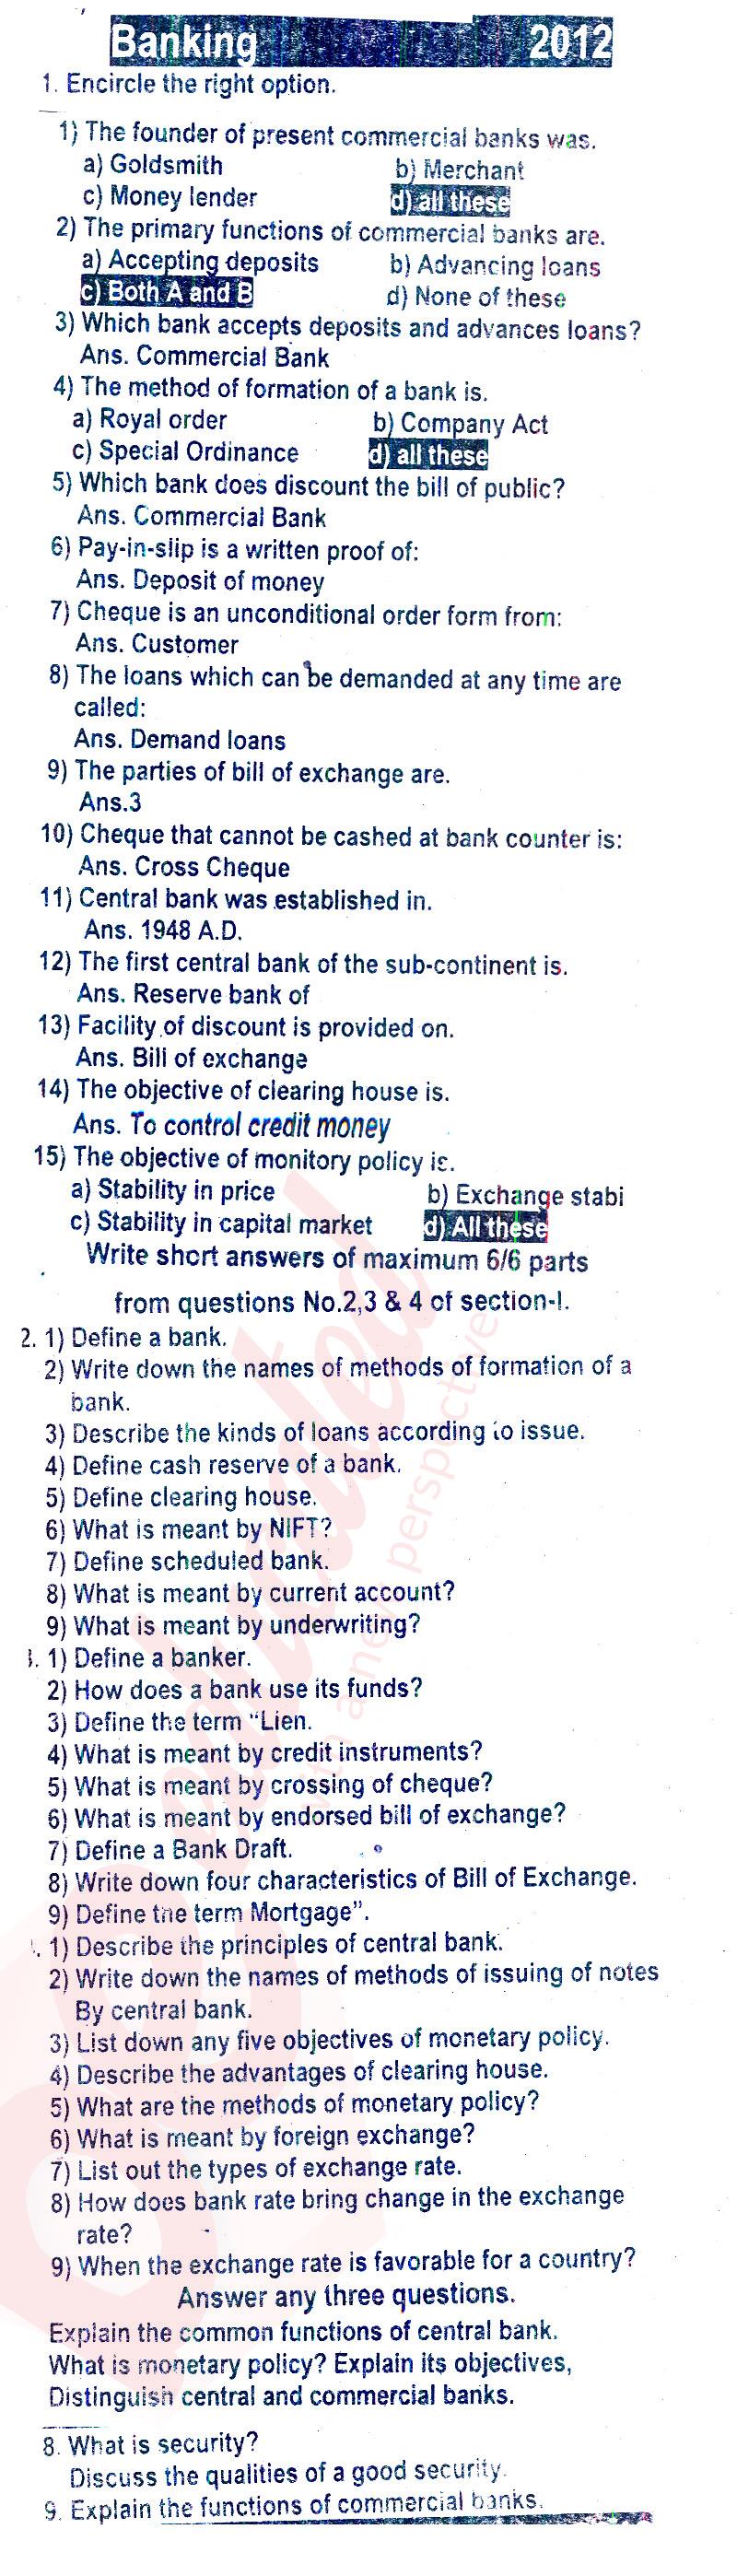 Principles of Banking ICOM Part 2 Past Paper Group 1 BISE Rawalpindi 2012